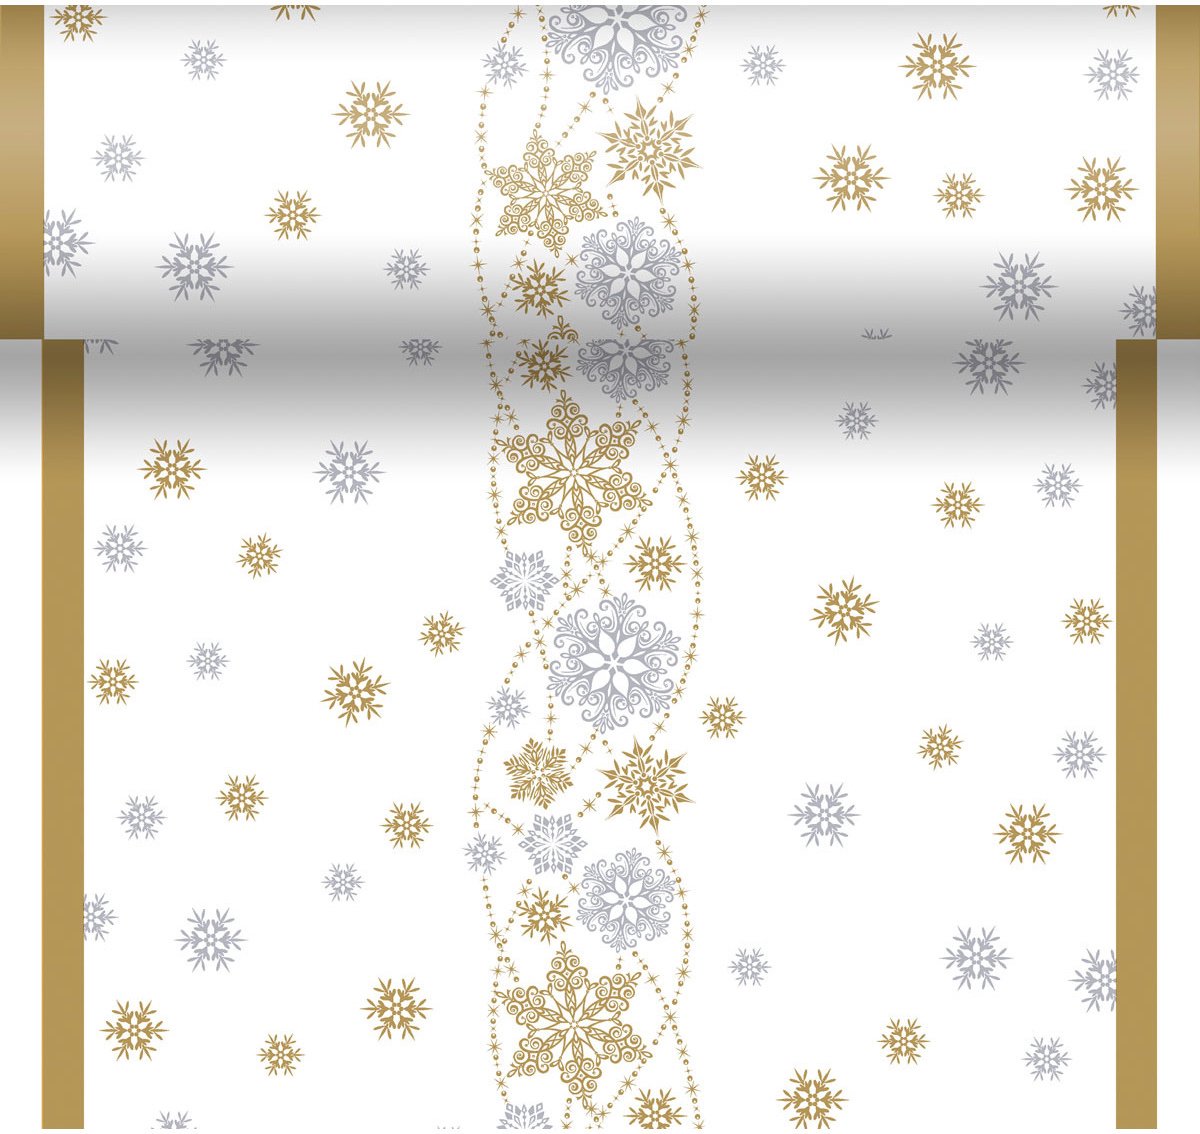 2x stuks kerst thema tafellopers/placemats wit met glitter sneeuwvlokken 40 x 480 cm - Kerstdiner tafeldecoratie versieringen